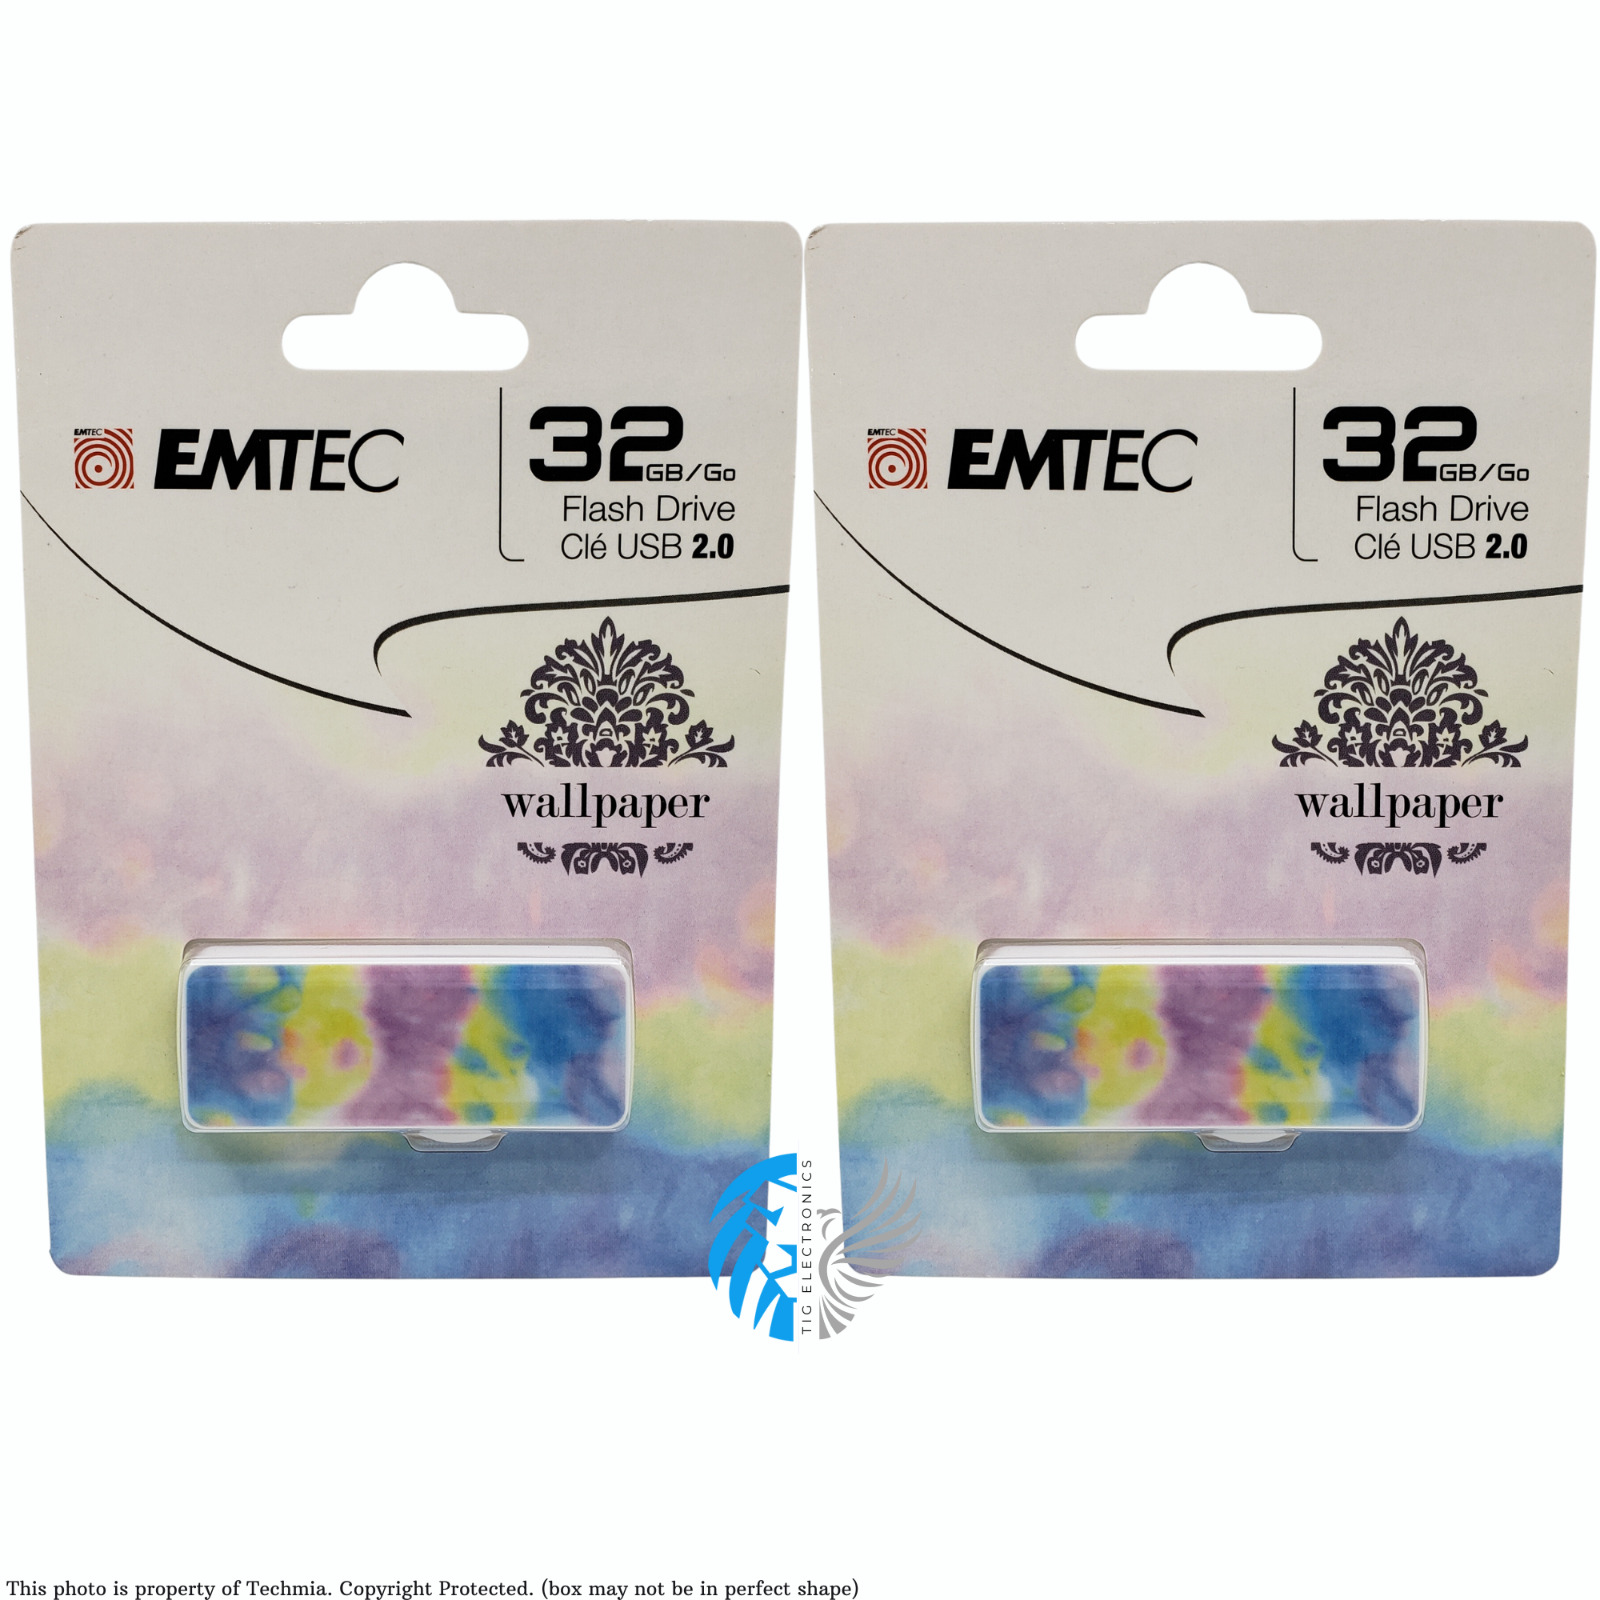 2 PACK Emtec 32GB Slide Flash Drive - USB 2.0 - Wallpaper (ECMMD32GM700WPTD)™